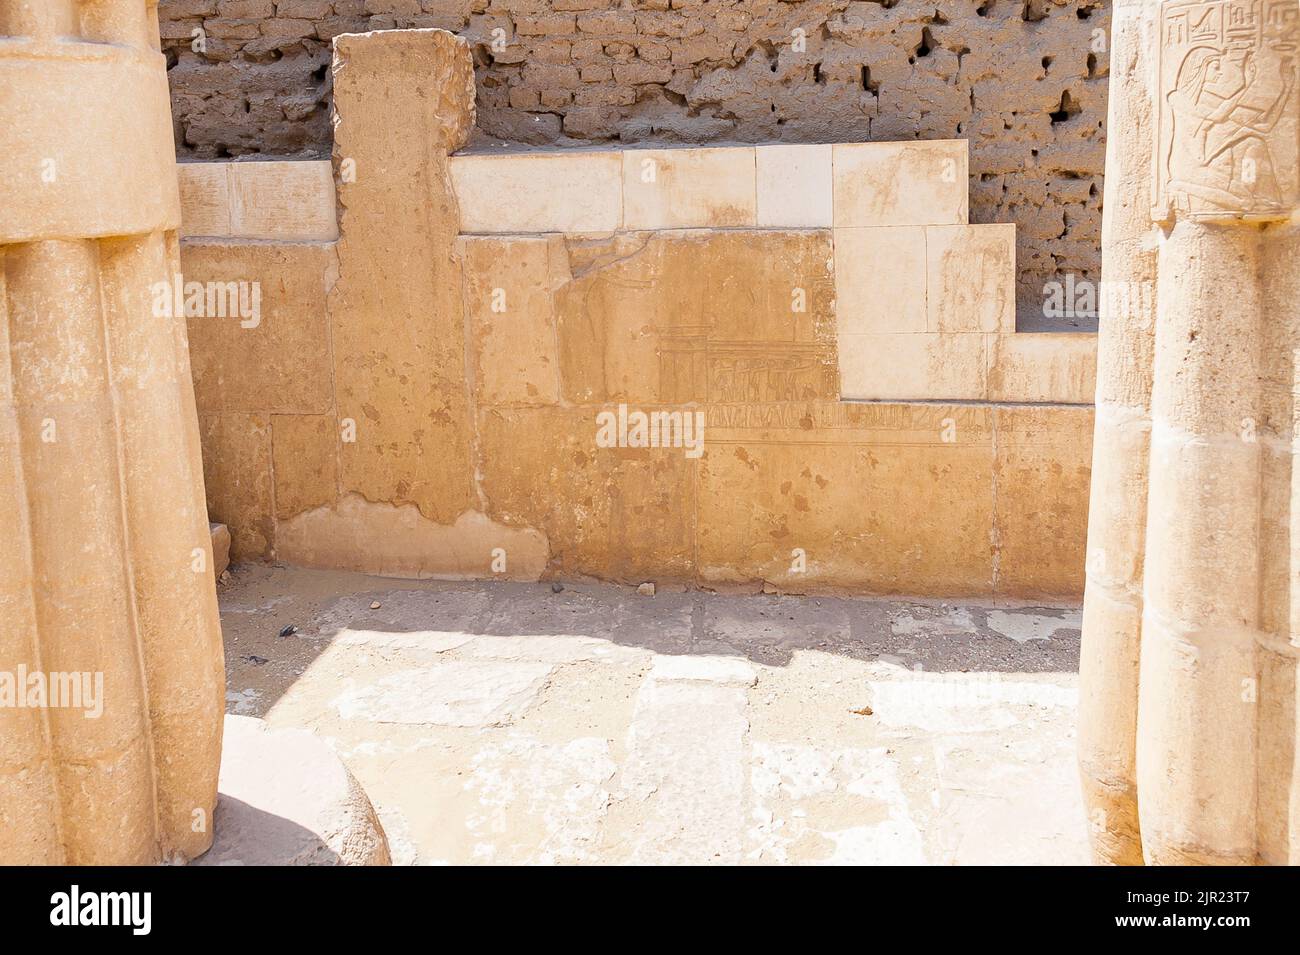 Égypte, Saqqara, tombe de Horemheb, mur sud de la deuxième cour, reste d'un mur de phase précédente, démantelé dans la dernière étape de construction. Banque D'Images